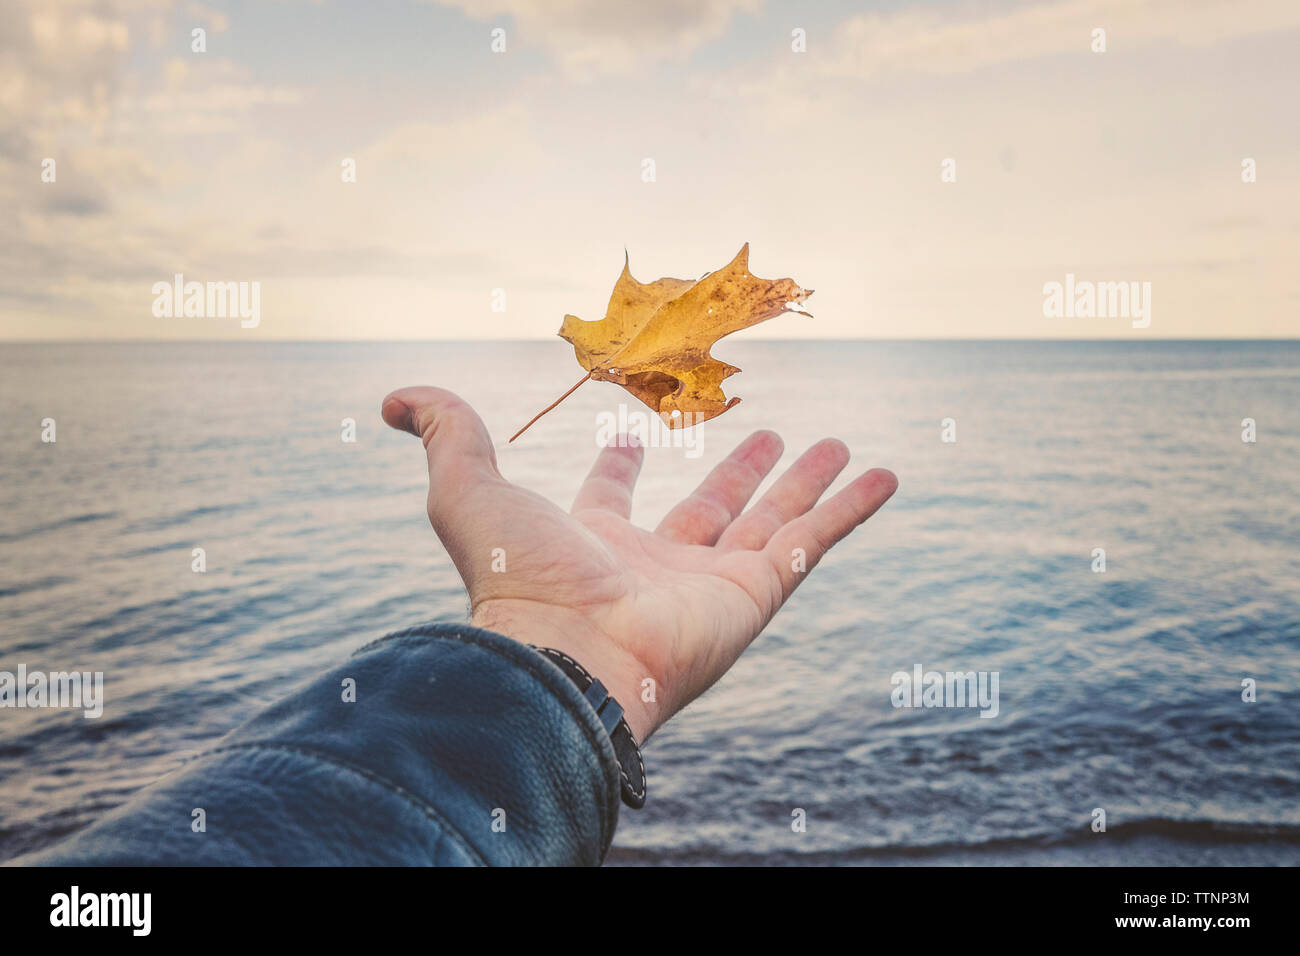 Portrait de l'homme main attraper des feuilles d'automne par le lac Supérieur contre le ciel au coucher du soleil Banque D'Images